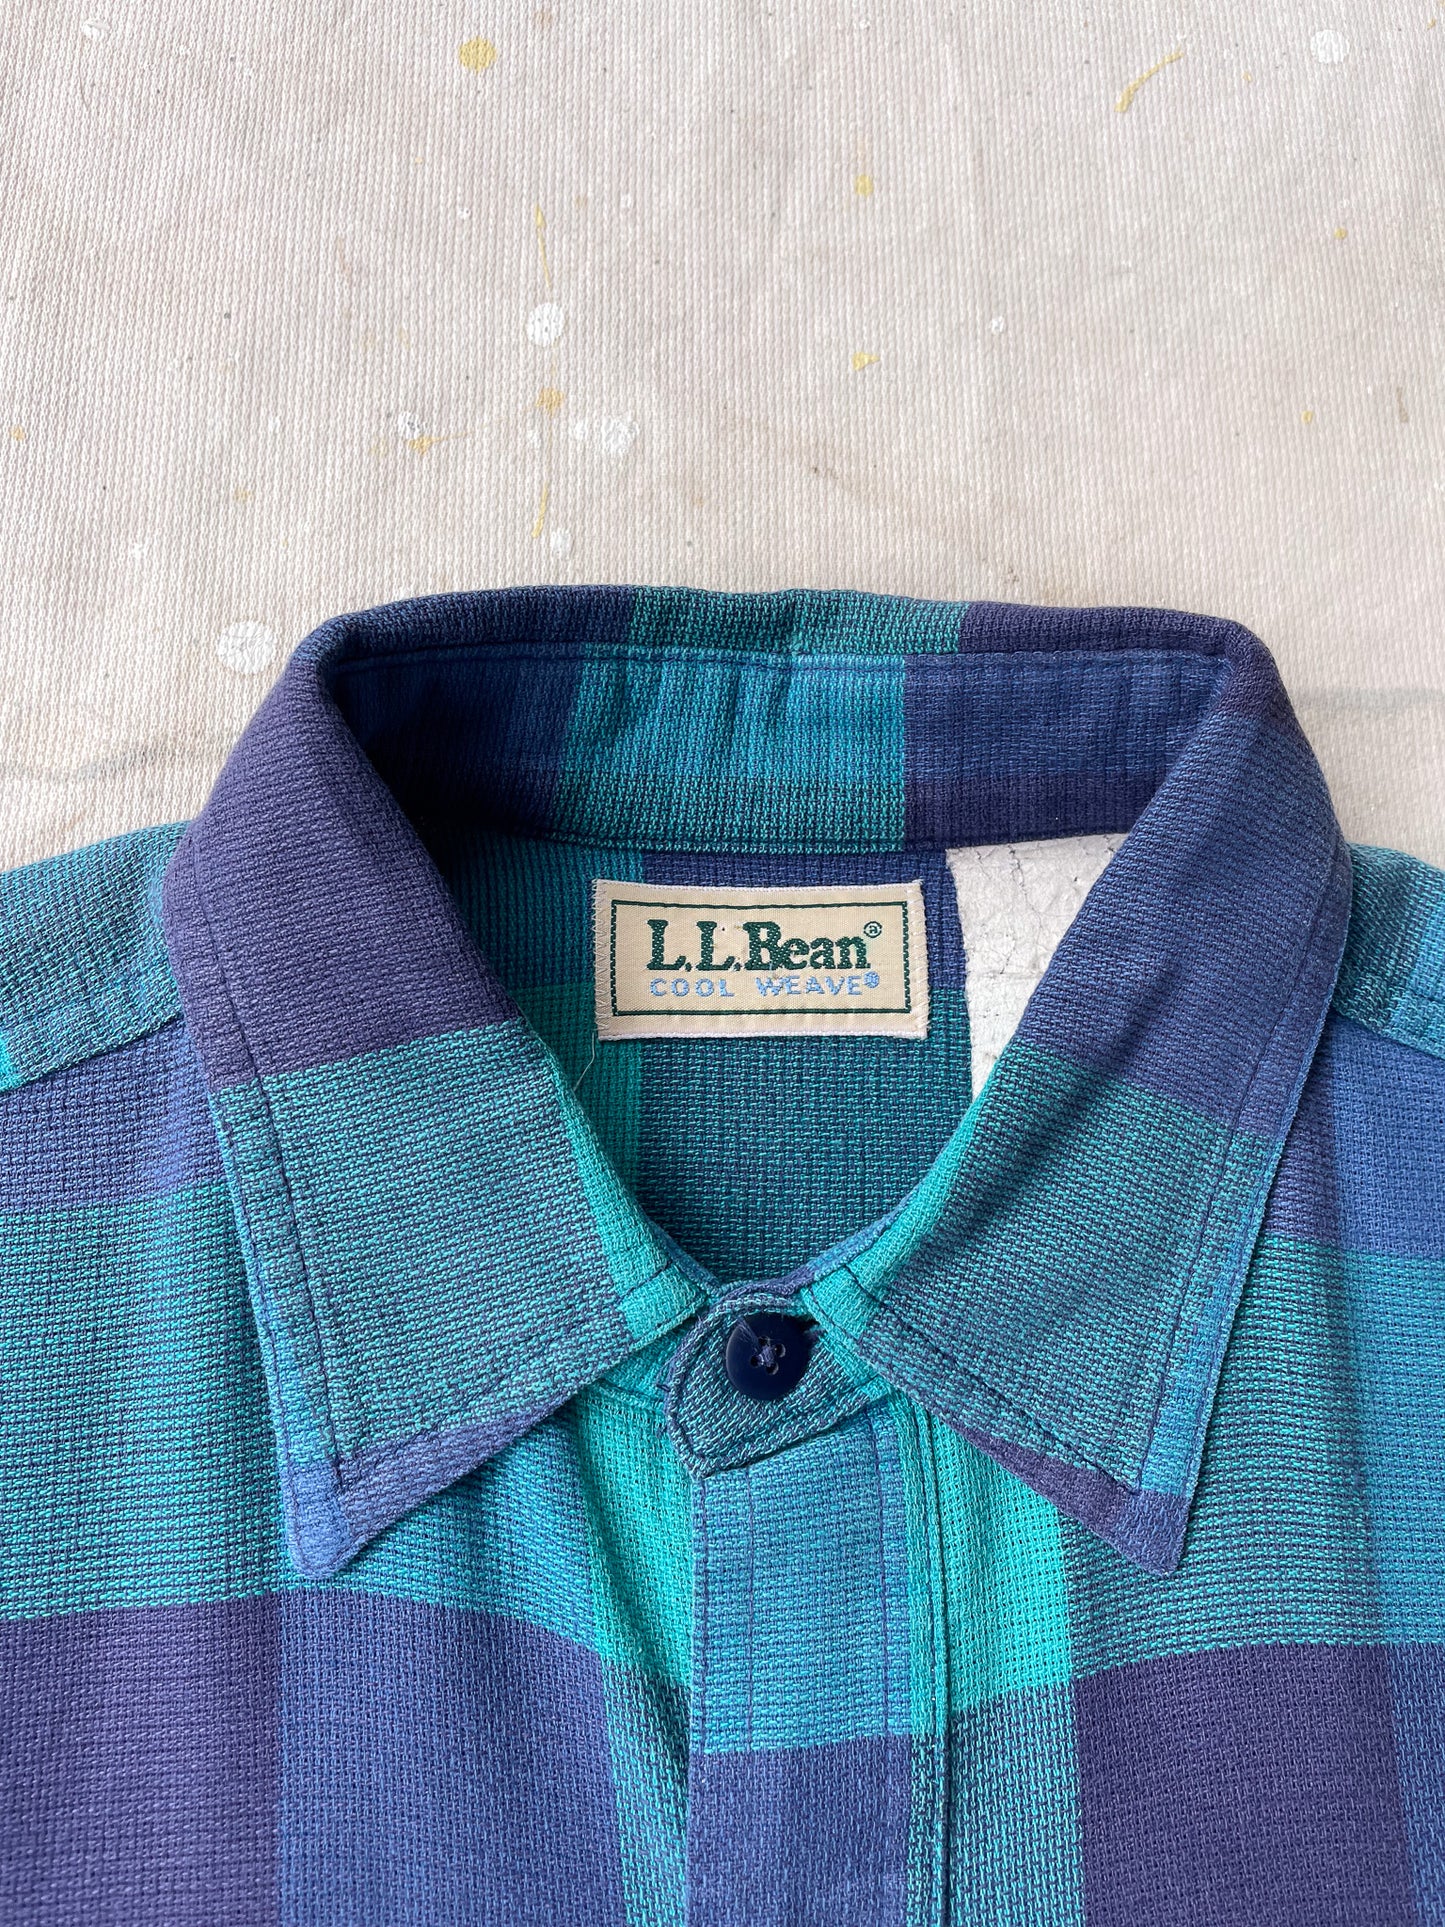 90's L.L. Bean Cool Weave Shirt—[M]